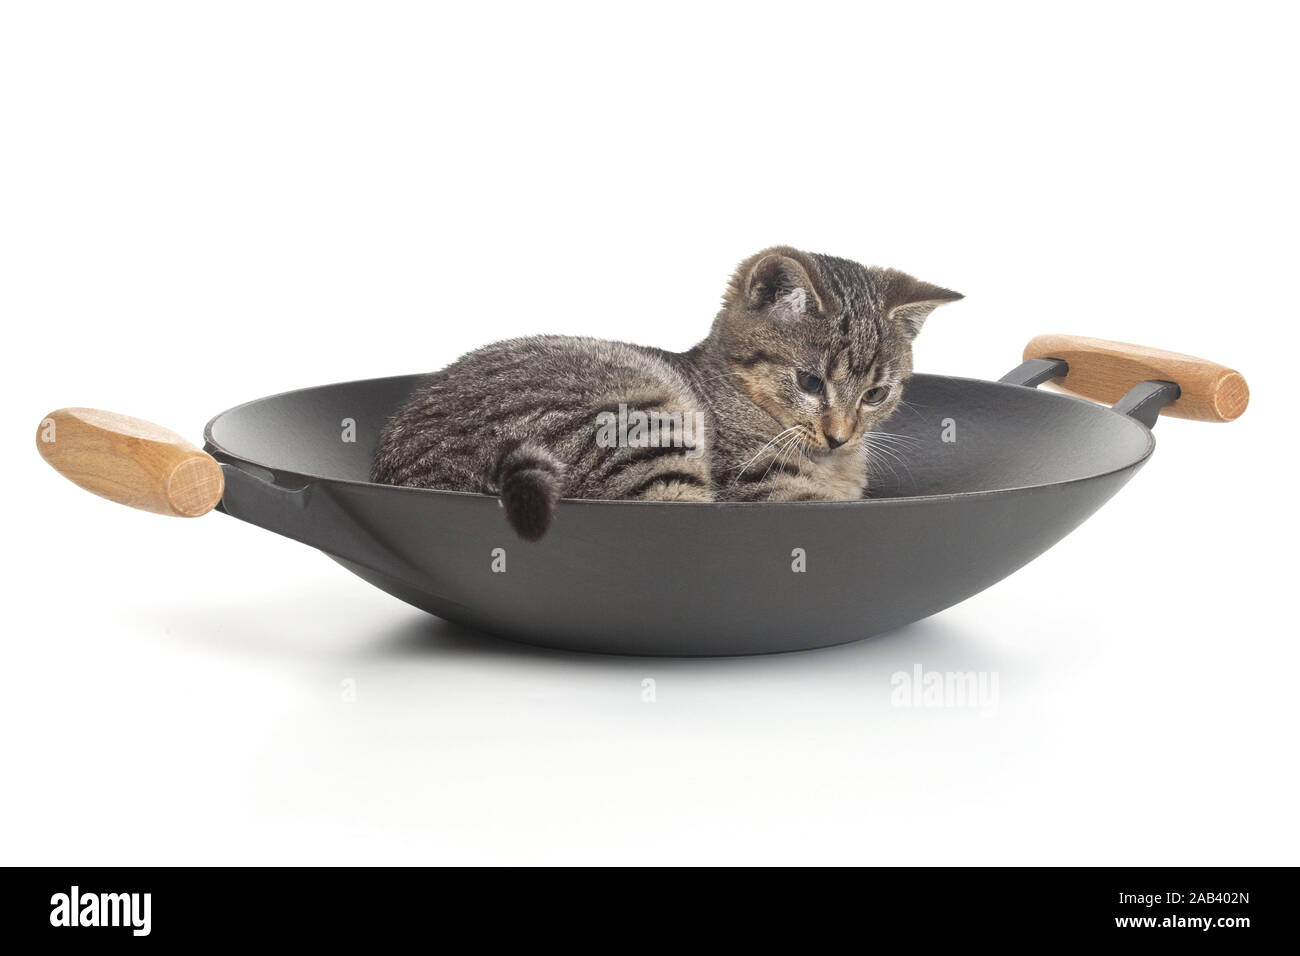 Junge Katze in einem Wok |Kitten in a wok| Stock Photo - Alamy